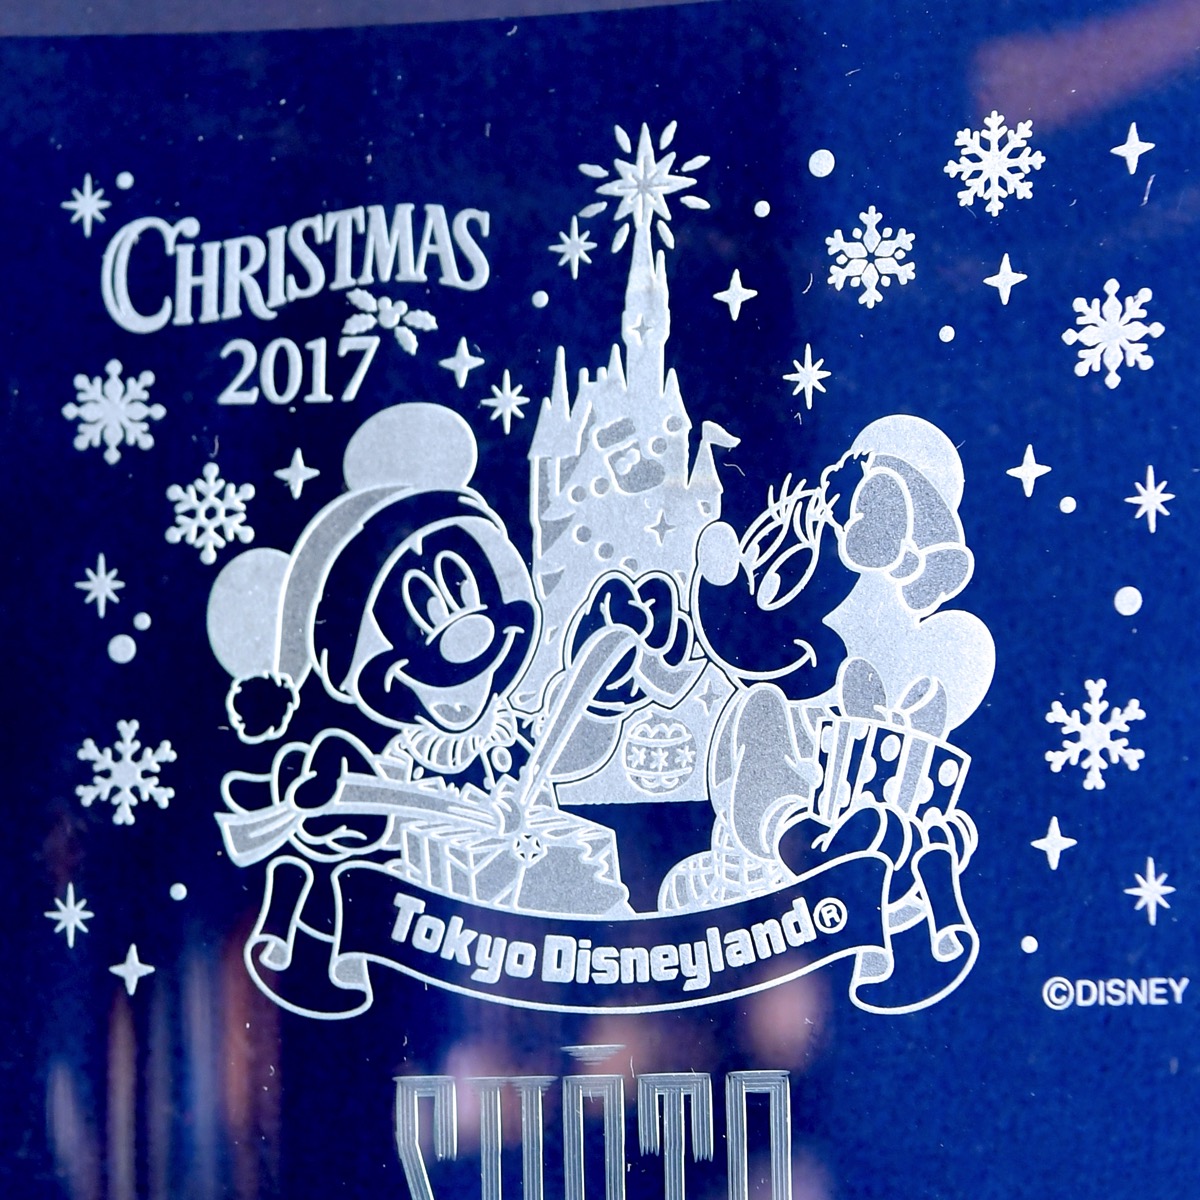 ディズニー ギフト オブ クリスマスデザイン 東京ディズニーランド クリスマス ファンタジー17 ガラスグッズ